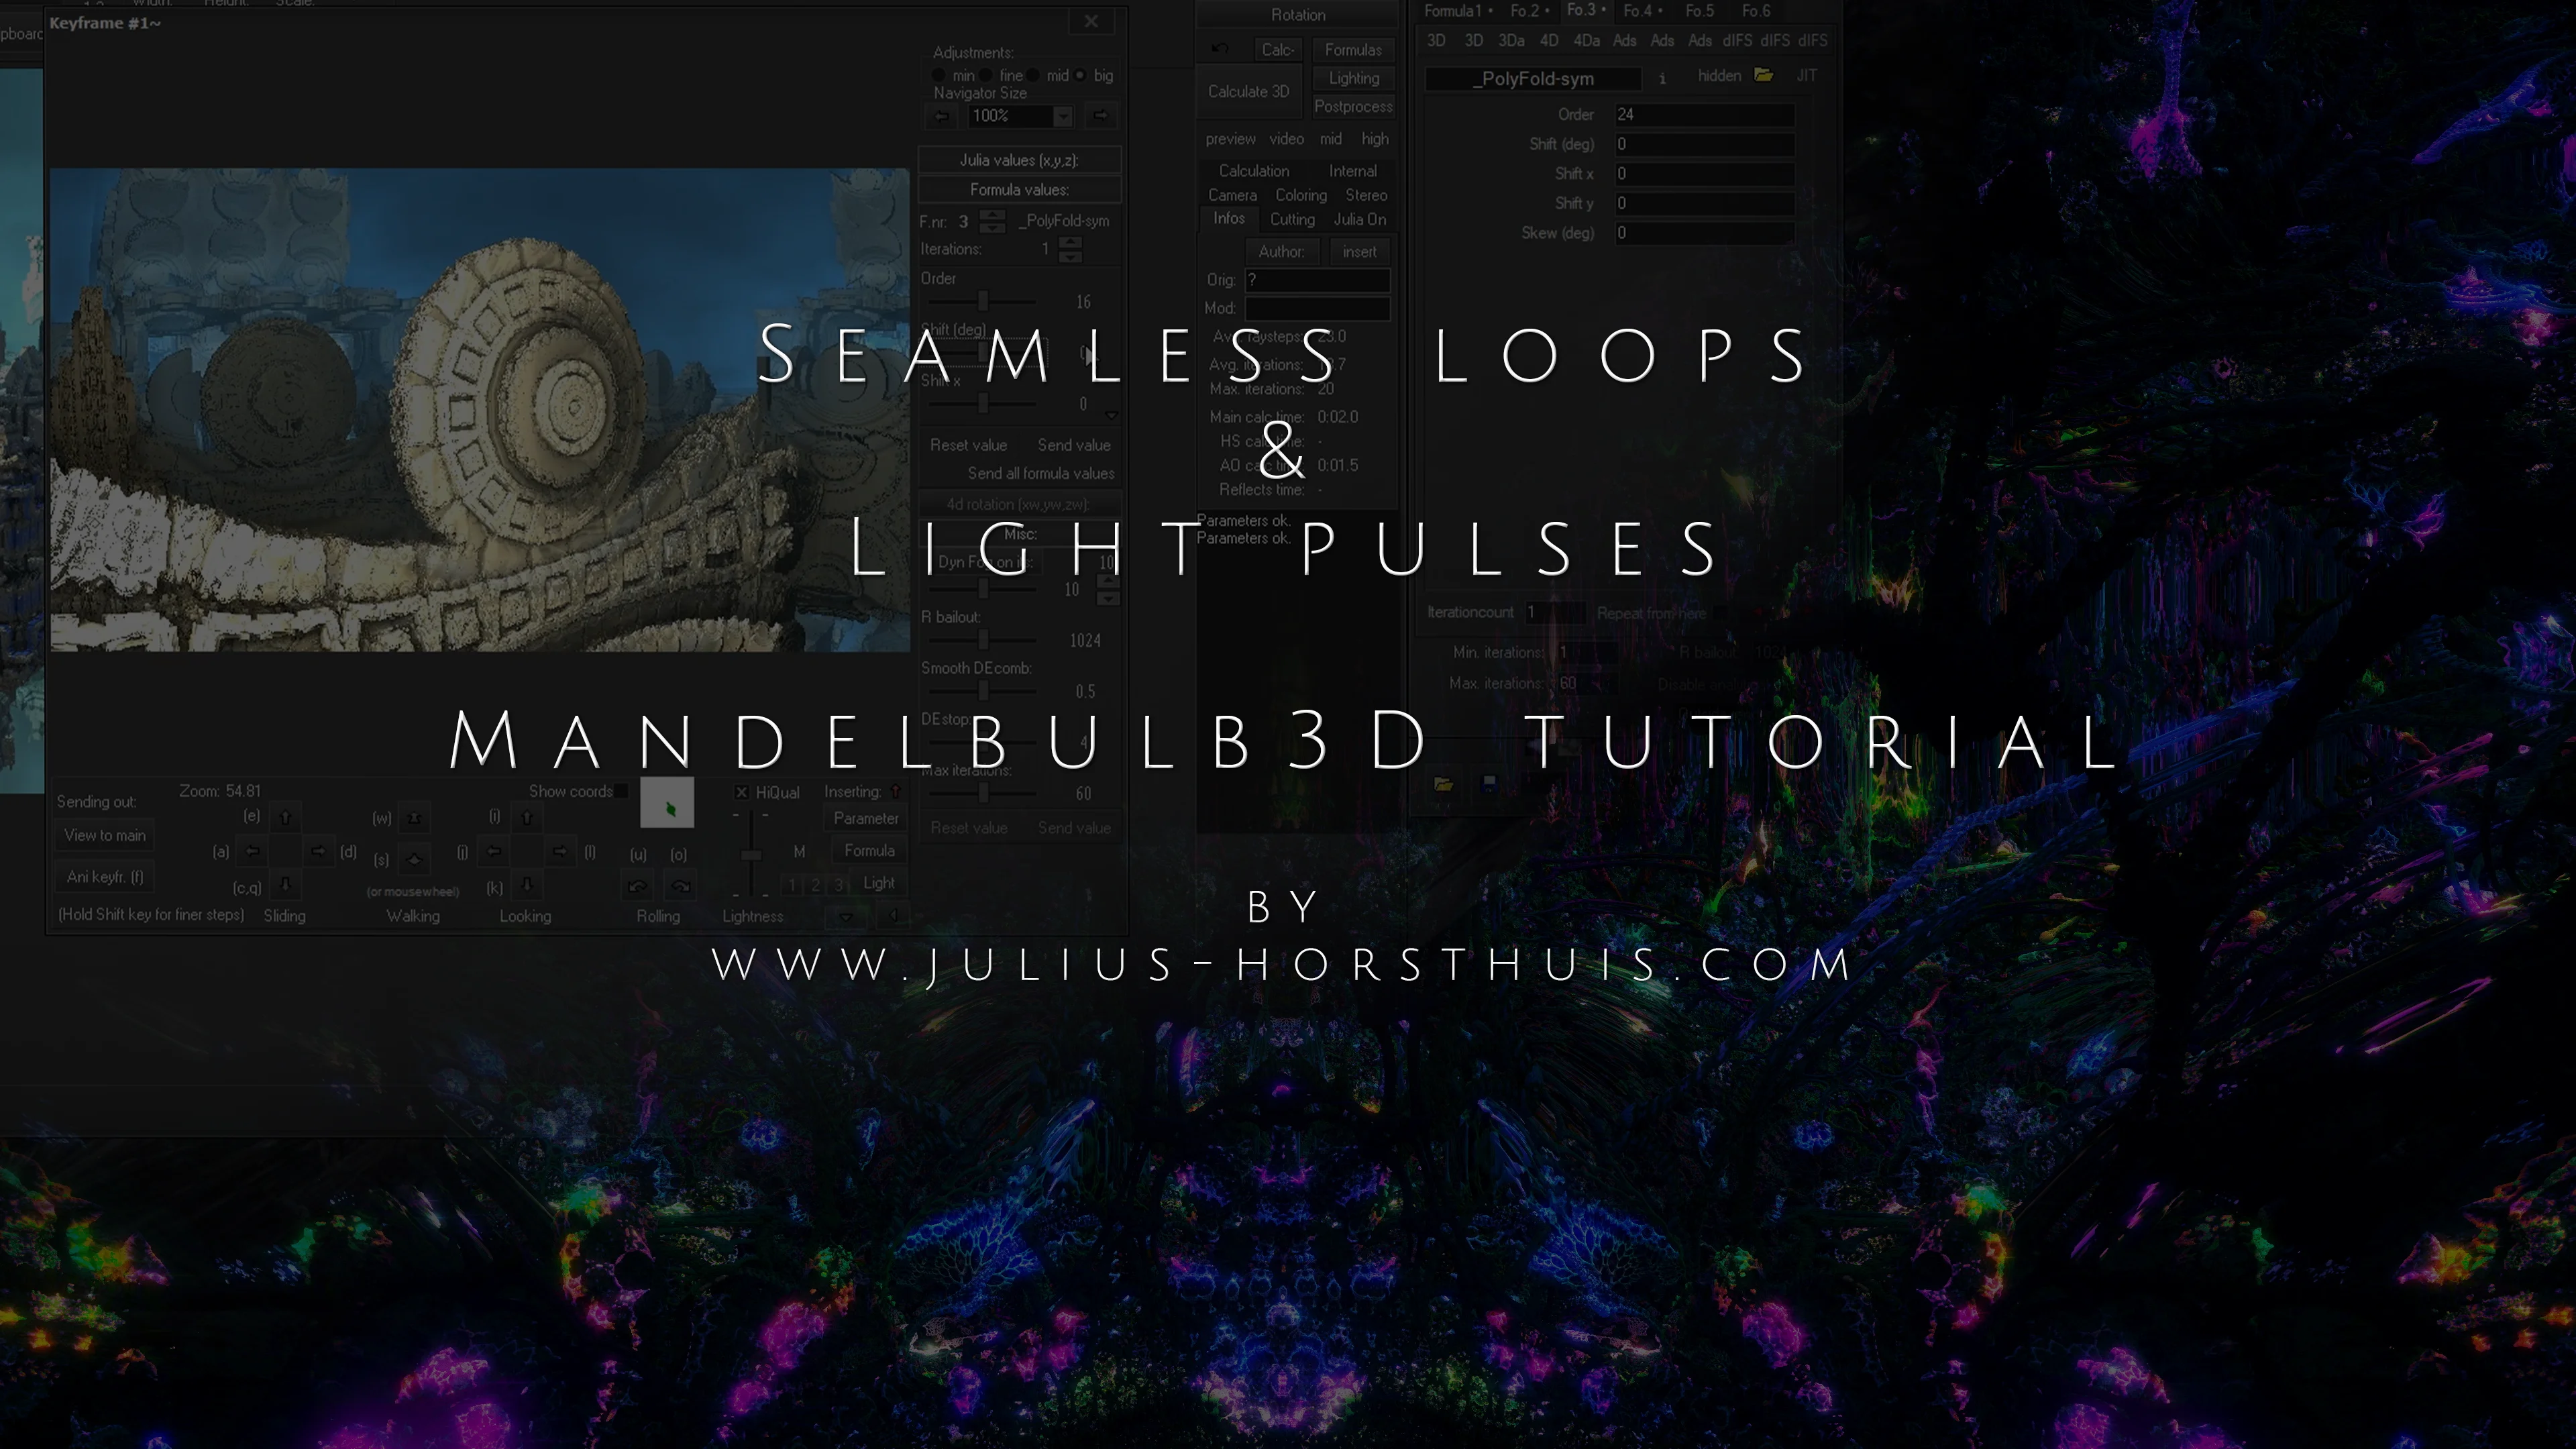 Seamless Loops & Light Flashes Mandelbulb3D tutorial on Vimeo